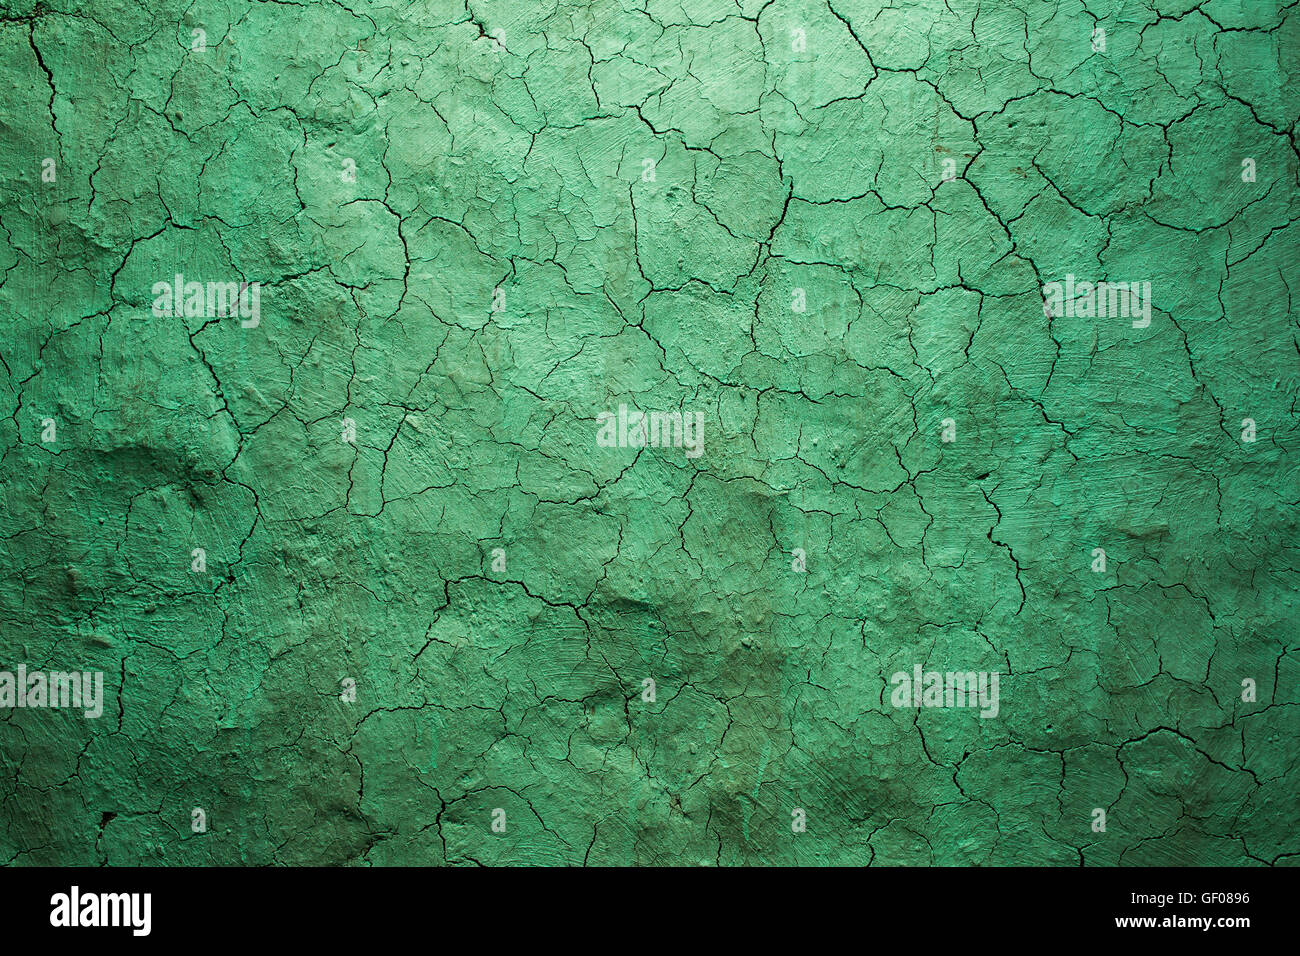 Viejo verde de textura de pared agrietada, la pintura vieja textura se descascarilla y agrietada cae la destrucción. Grunge textura de pared de diseño. Foto de stock